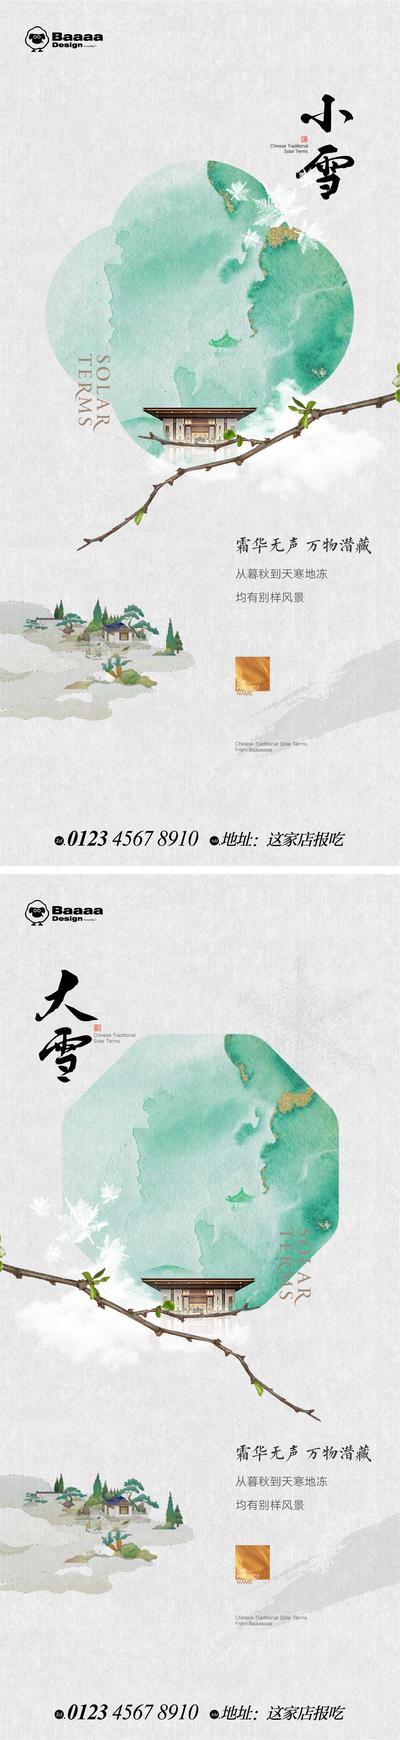 【南门网】广告 海报 节气 中式 小雪 大雪 书法 意境 版式 庭院